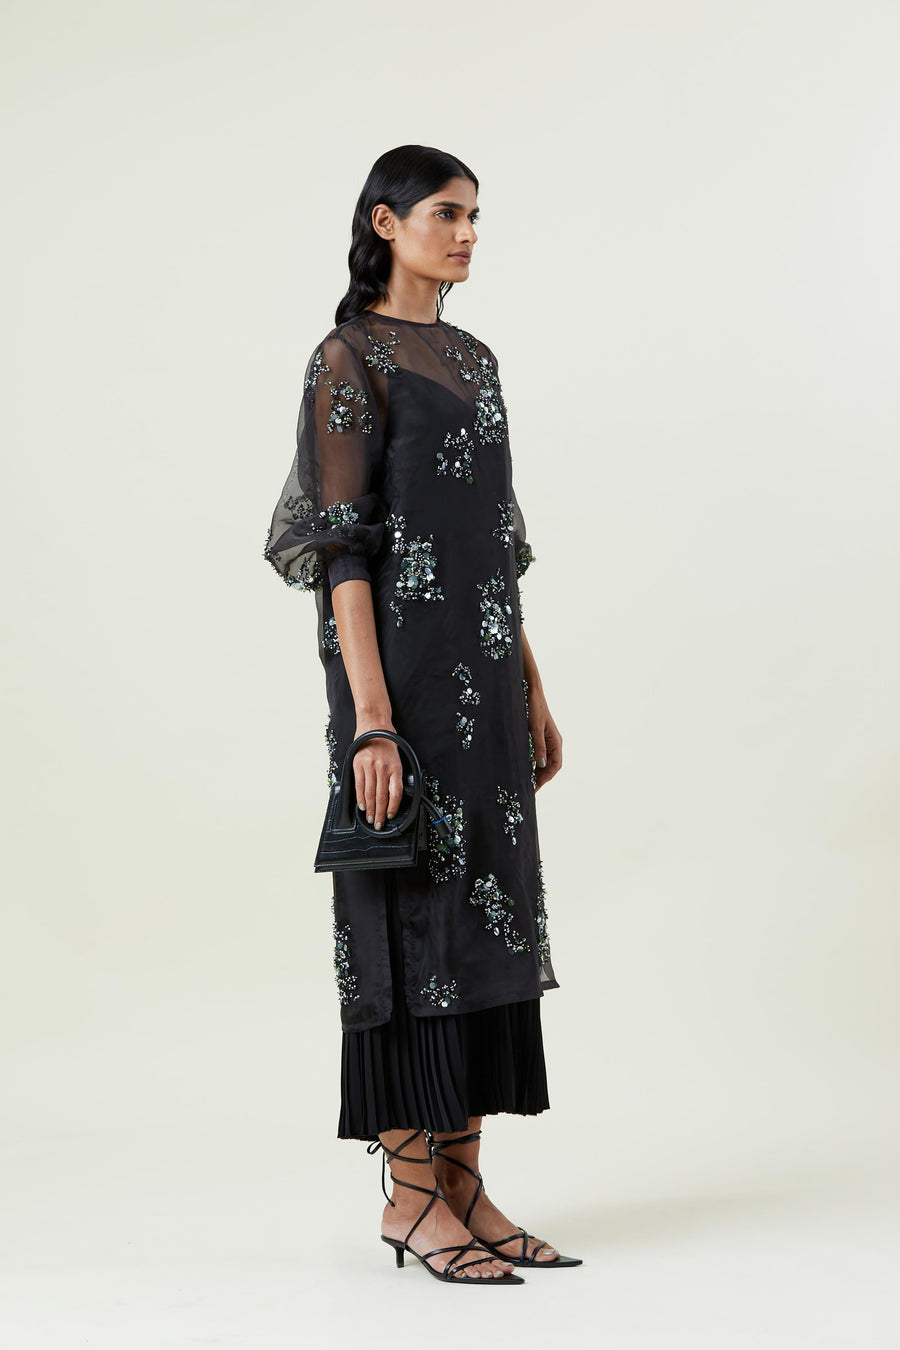 ‘CELESTIA’ EMBELLISHED DRESS - Kanika Goyal Label